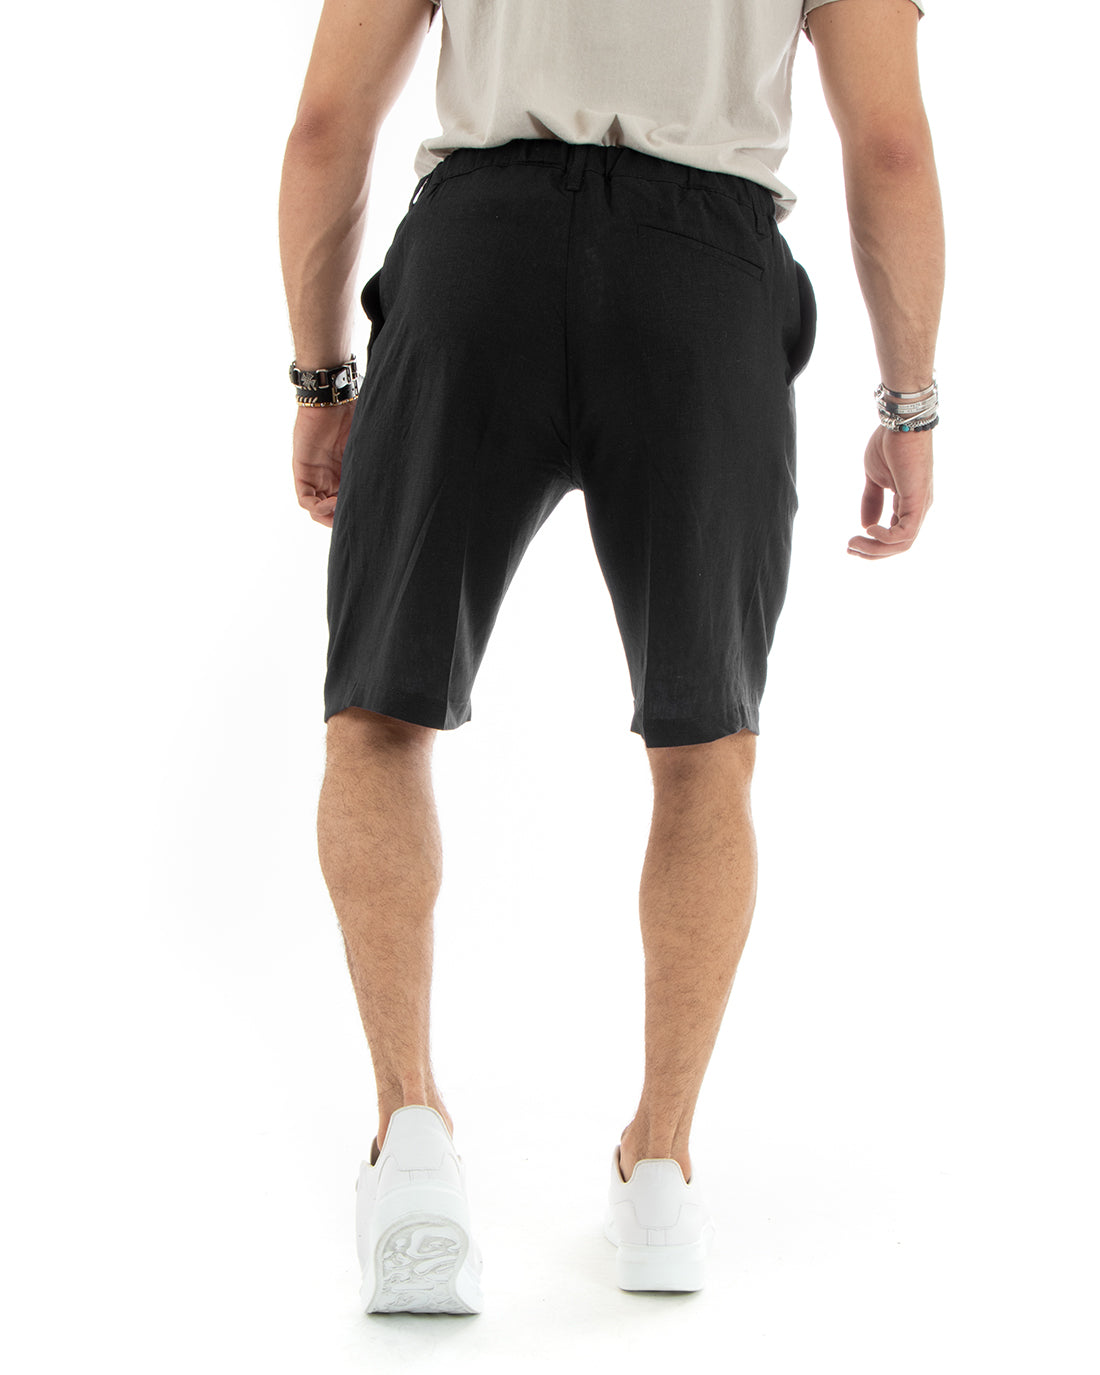 Bermuda Pantaloncino Uomo Corto Lino Tinta Unita Nero Sartoriale Con Laccetto GIOSAL-PC1929A